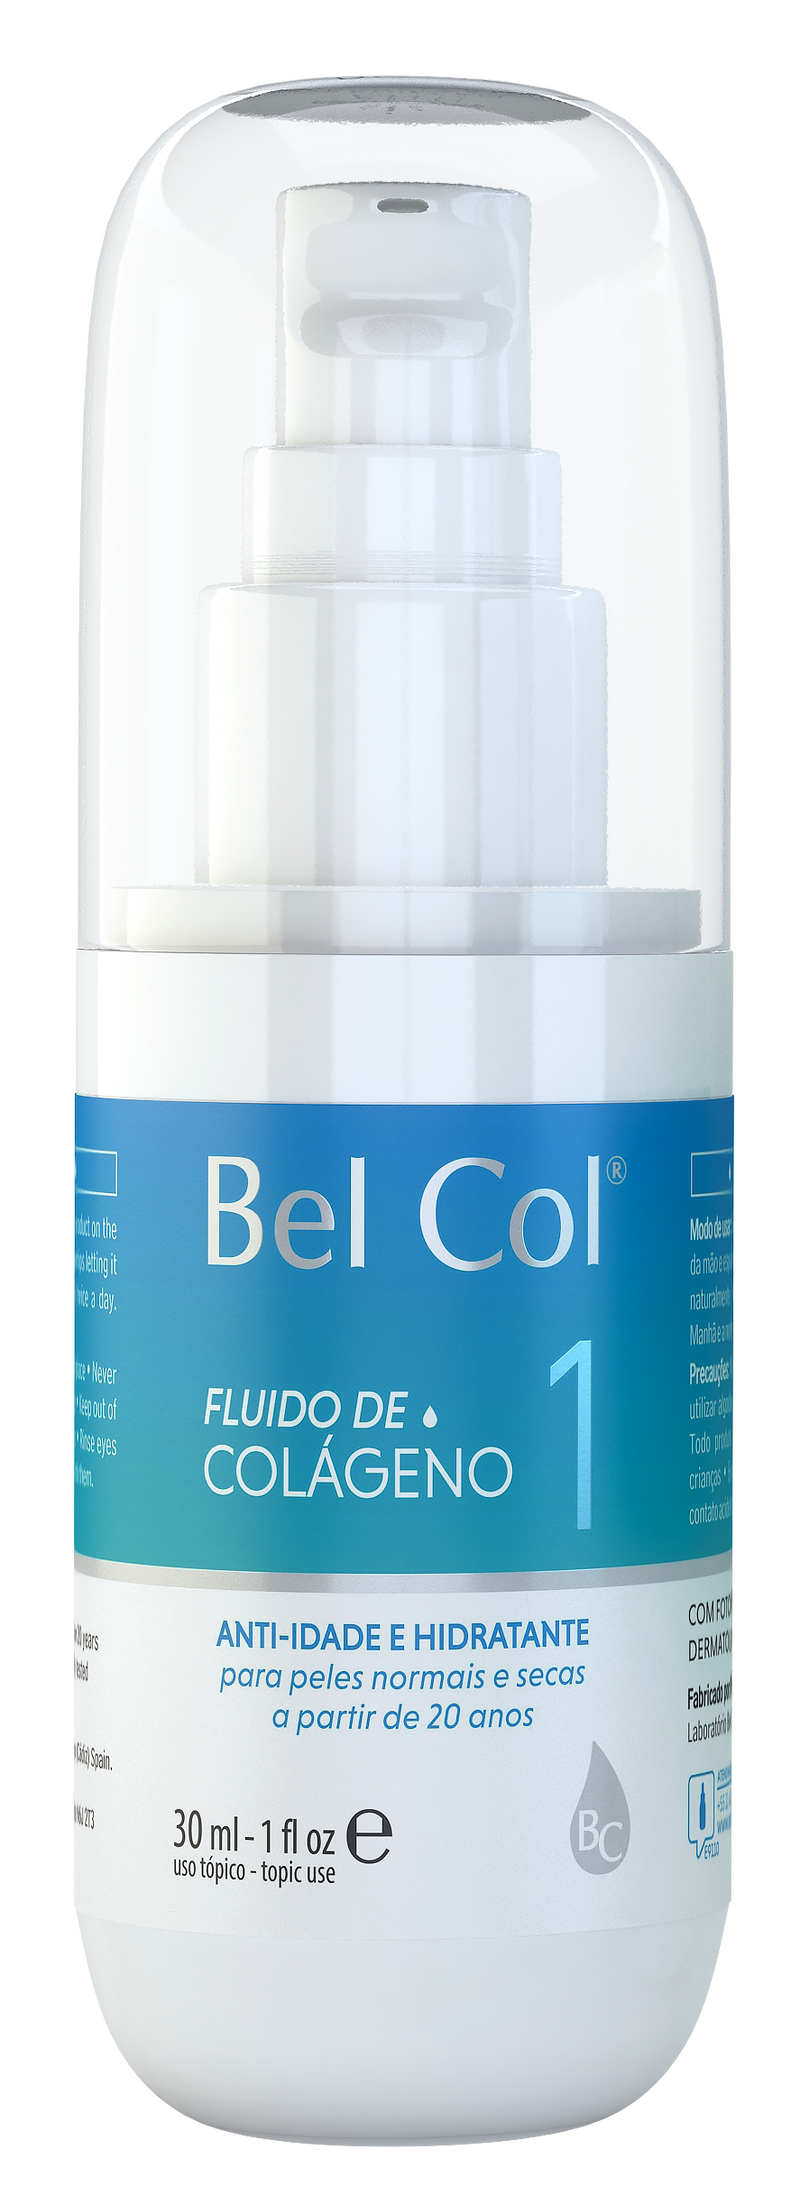 Bel Col 1 - Fluido de colageno 30ML